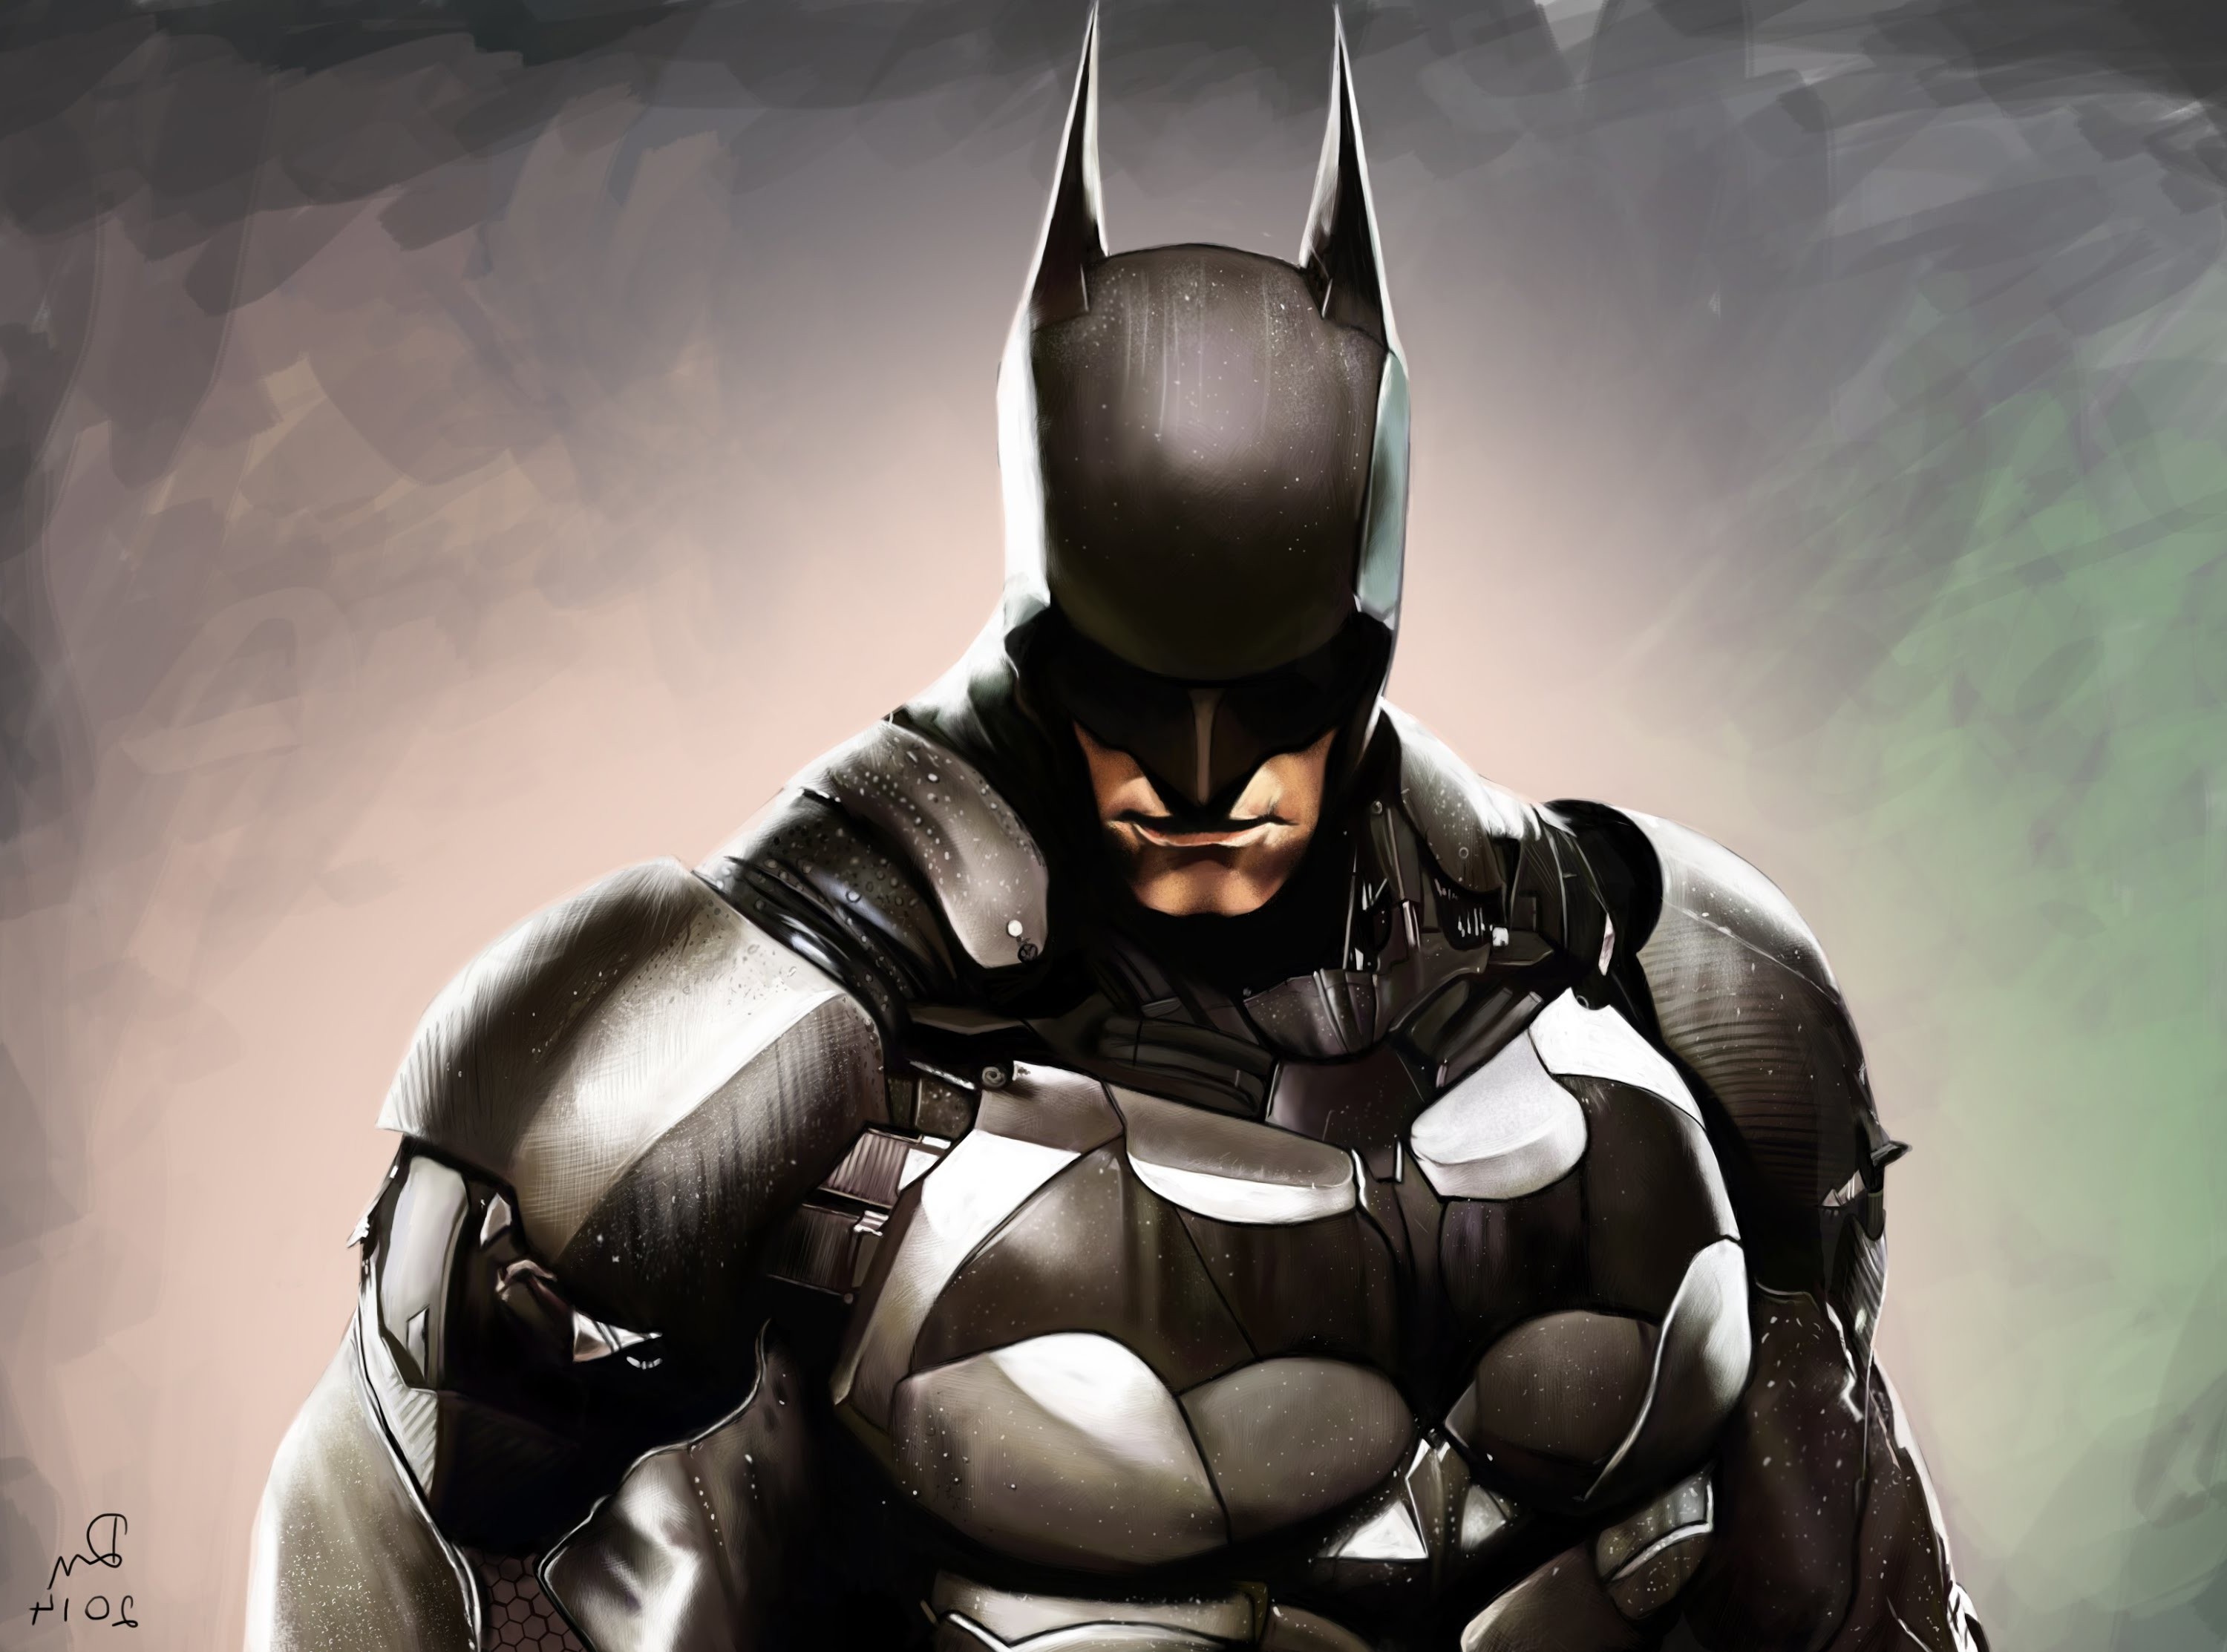 fond d'écran batman arkham knight,homme chauve souris,super héros,personnage fictif,ligue de justice,héros